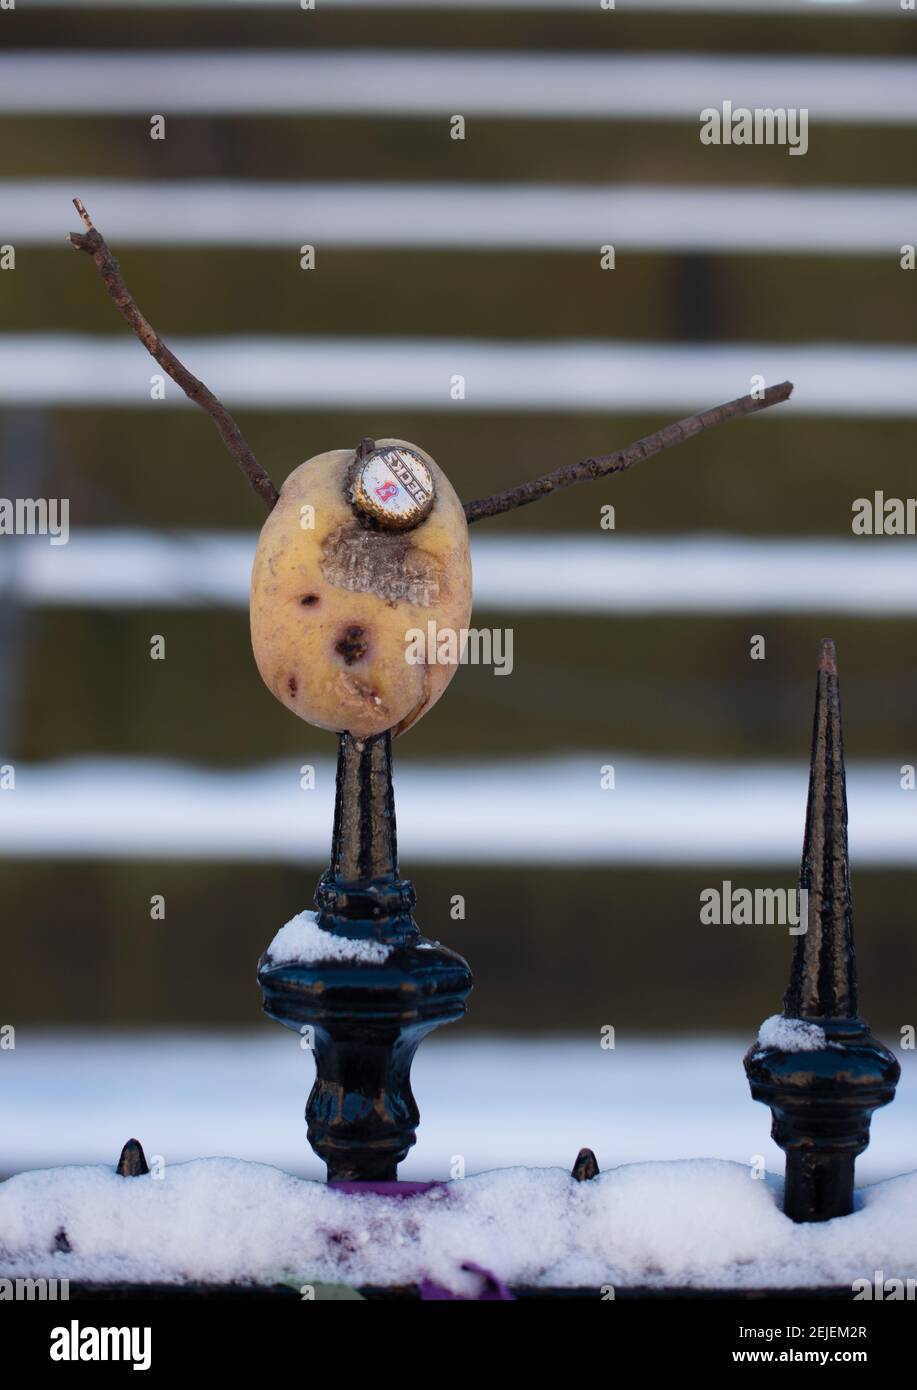 Lustiger schottischer Humor, DIY Mr. Potato Head mit Bierflaschengesicht und Stockarmen vom Scott Monument, Edinburgh. Stockfoto